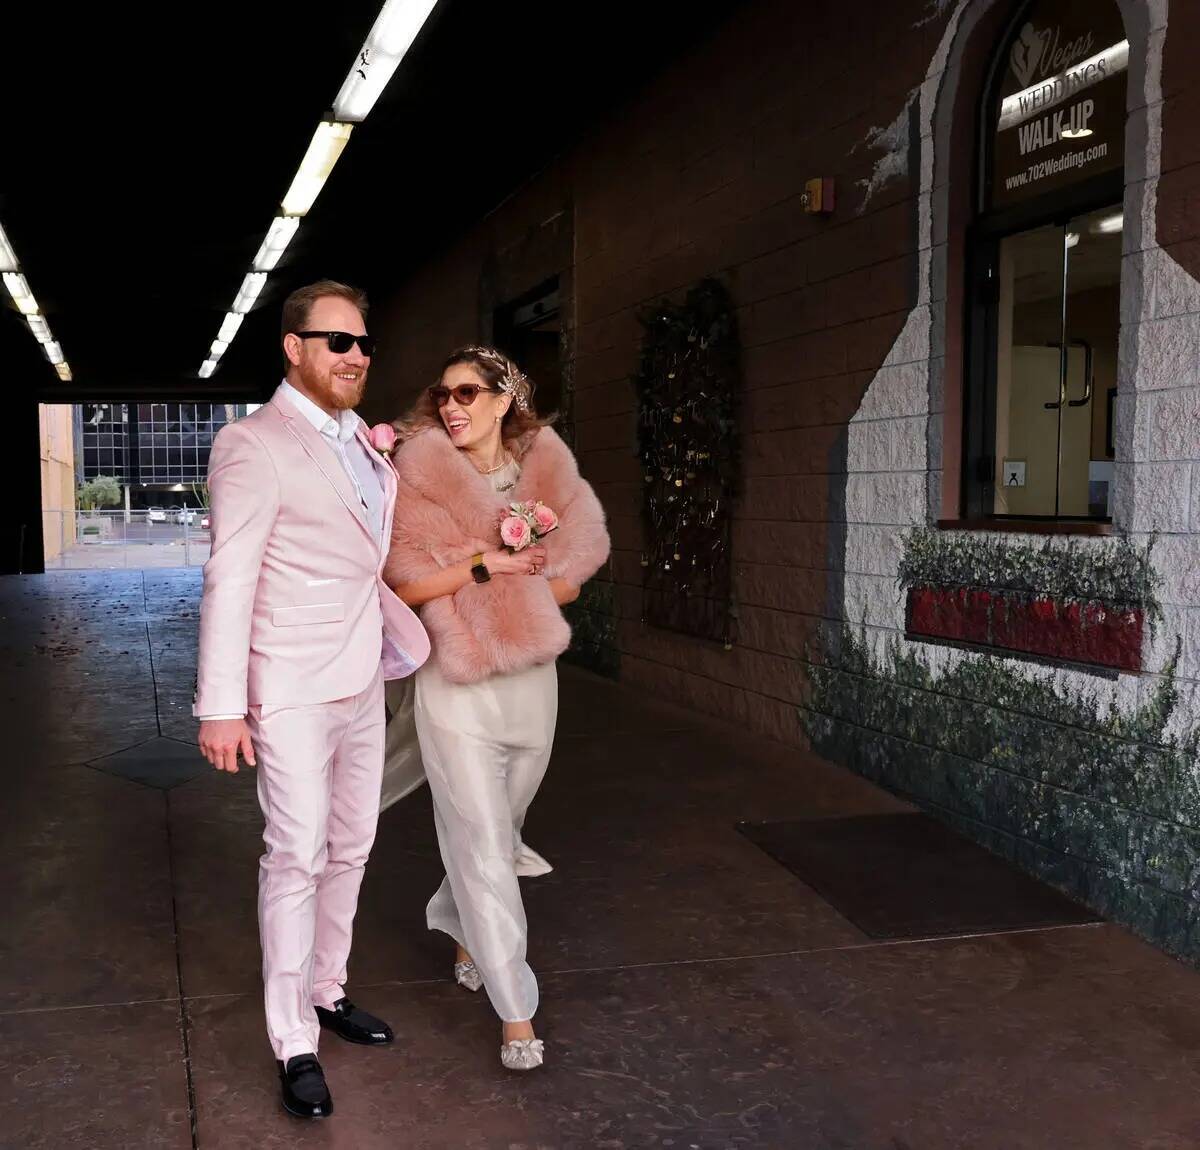 Día de San Valentín: las parejas celebran en el frío Las Vegas | Las Vegas  Review-Journal en Español